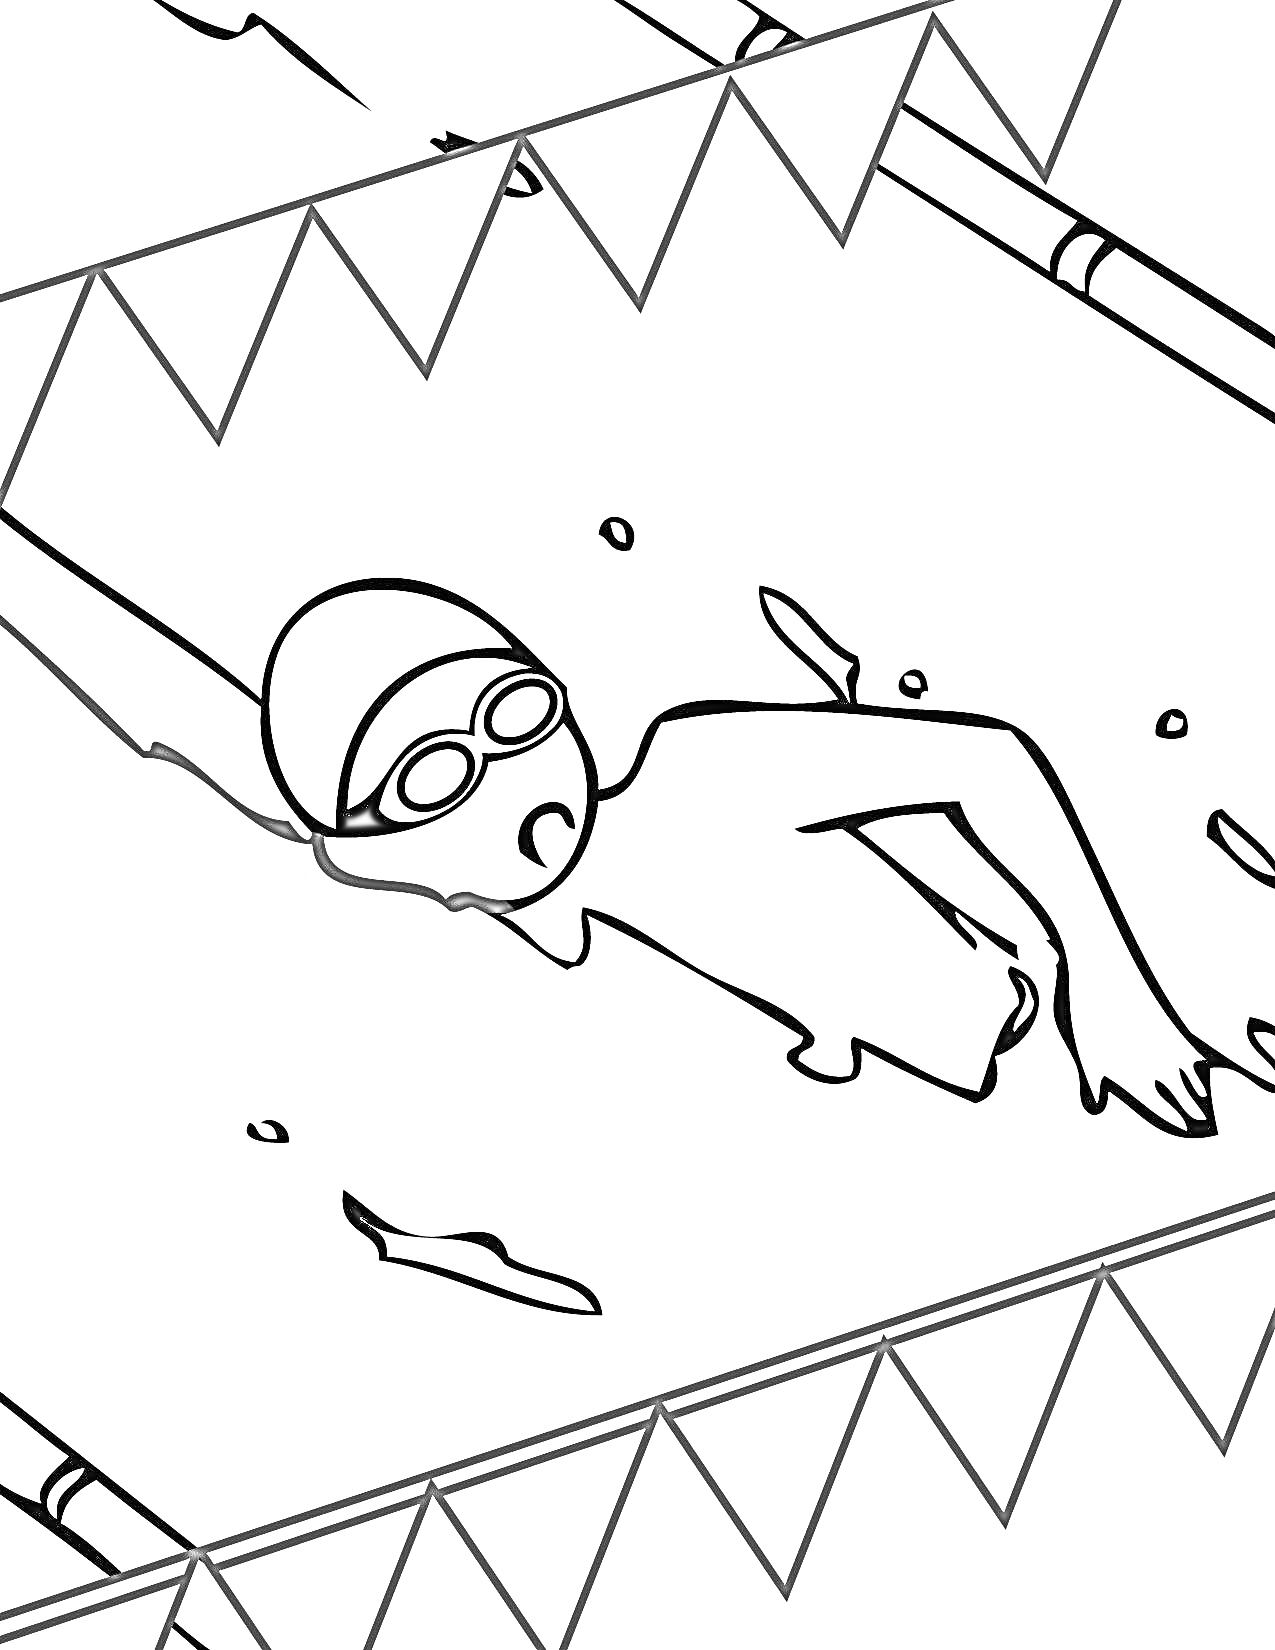 Раскраска Плавание в бассейне: человек в очках и шапочке плавает в бассейне в плавательной дорожке